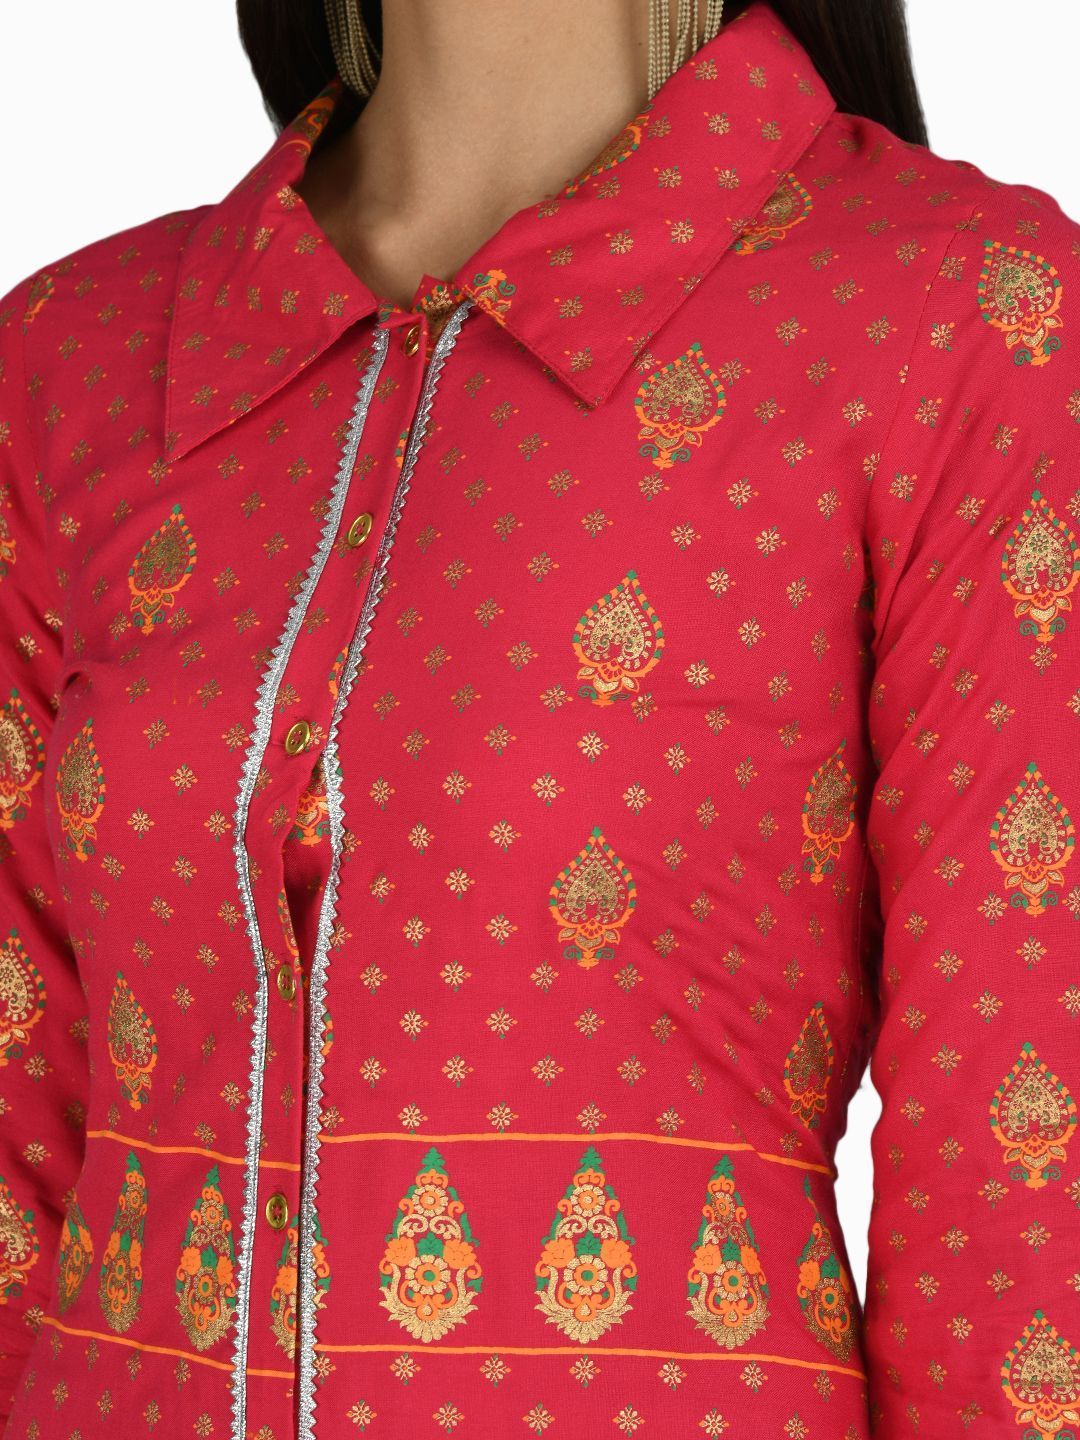 Women's Red Cotton Printed 3/4 Sleeve Shirt Collar Casual Anarkali kurta - Myshka